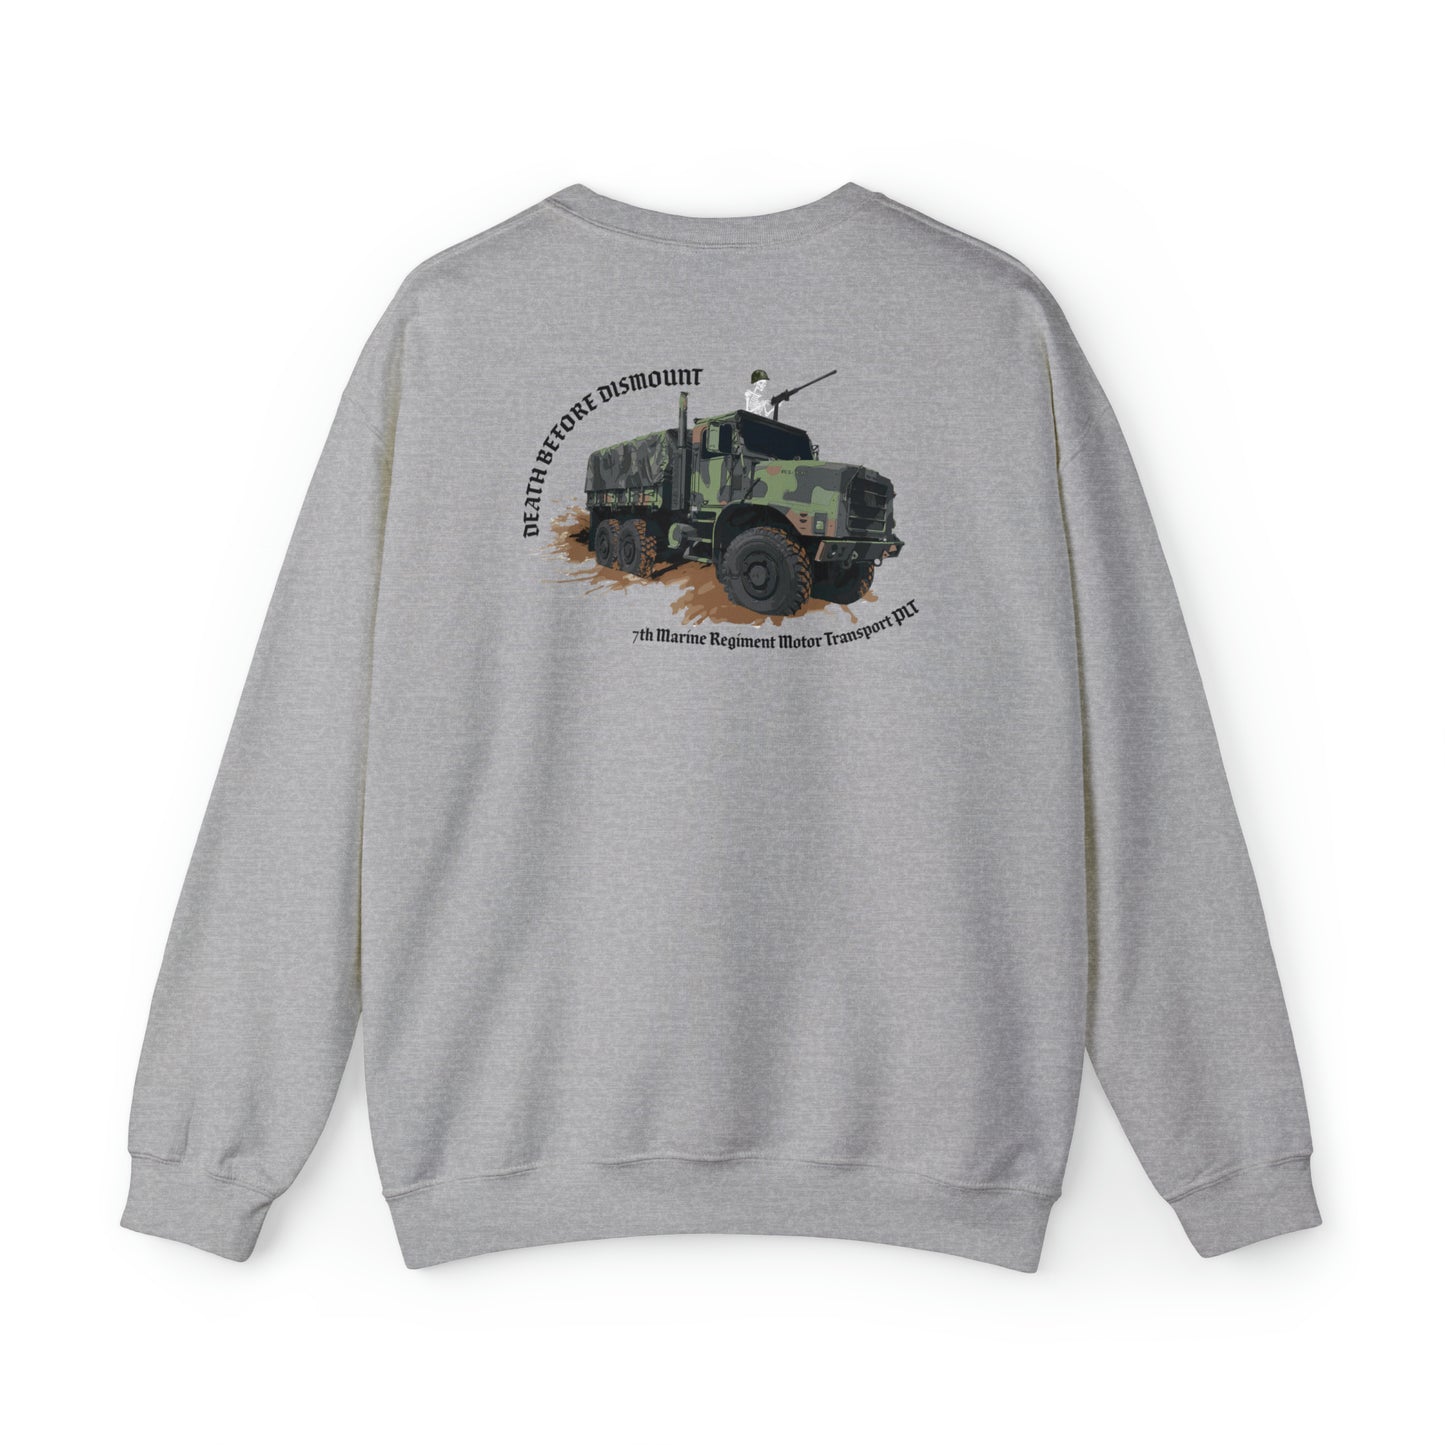 7th Marine Regiment Ripper Trucks Sweatshirt